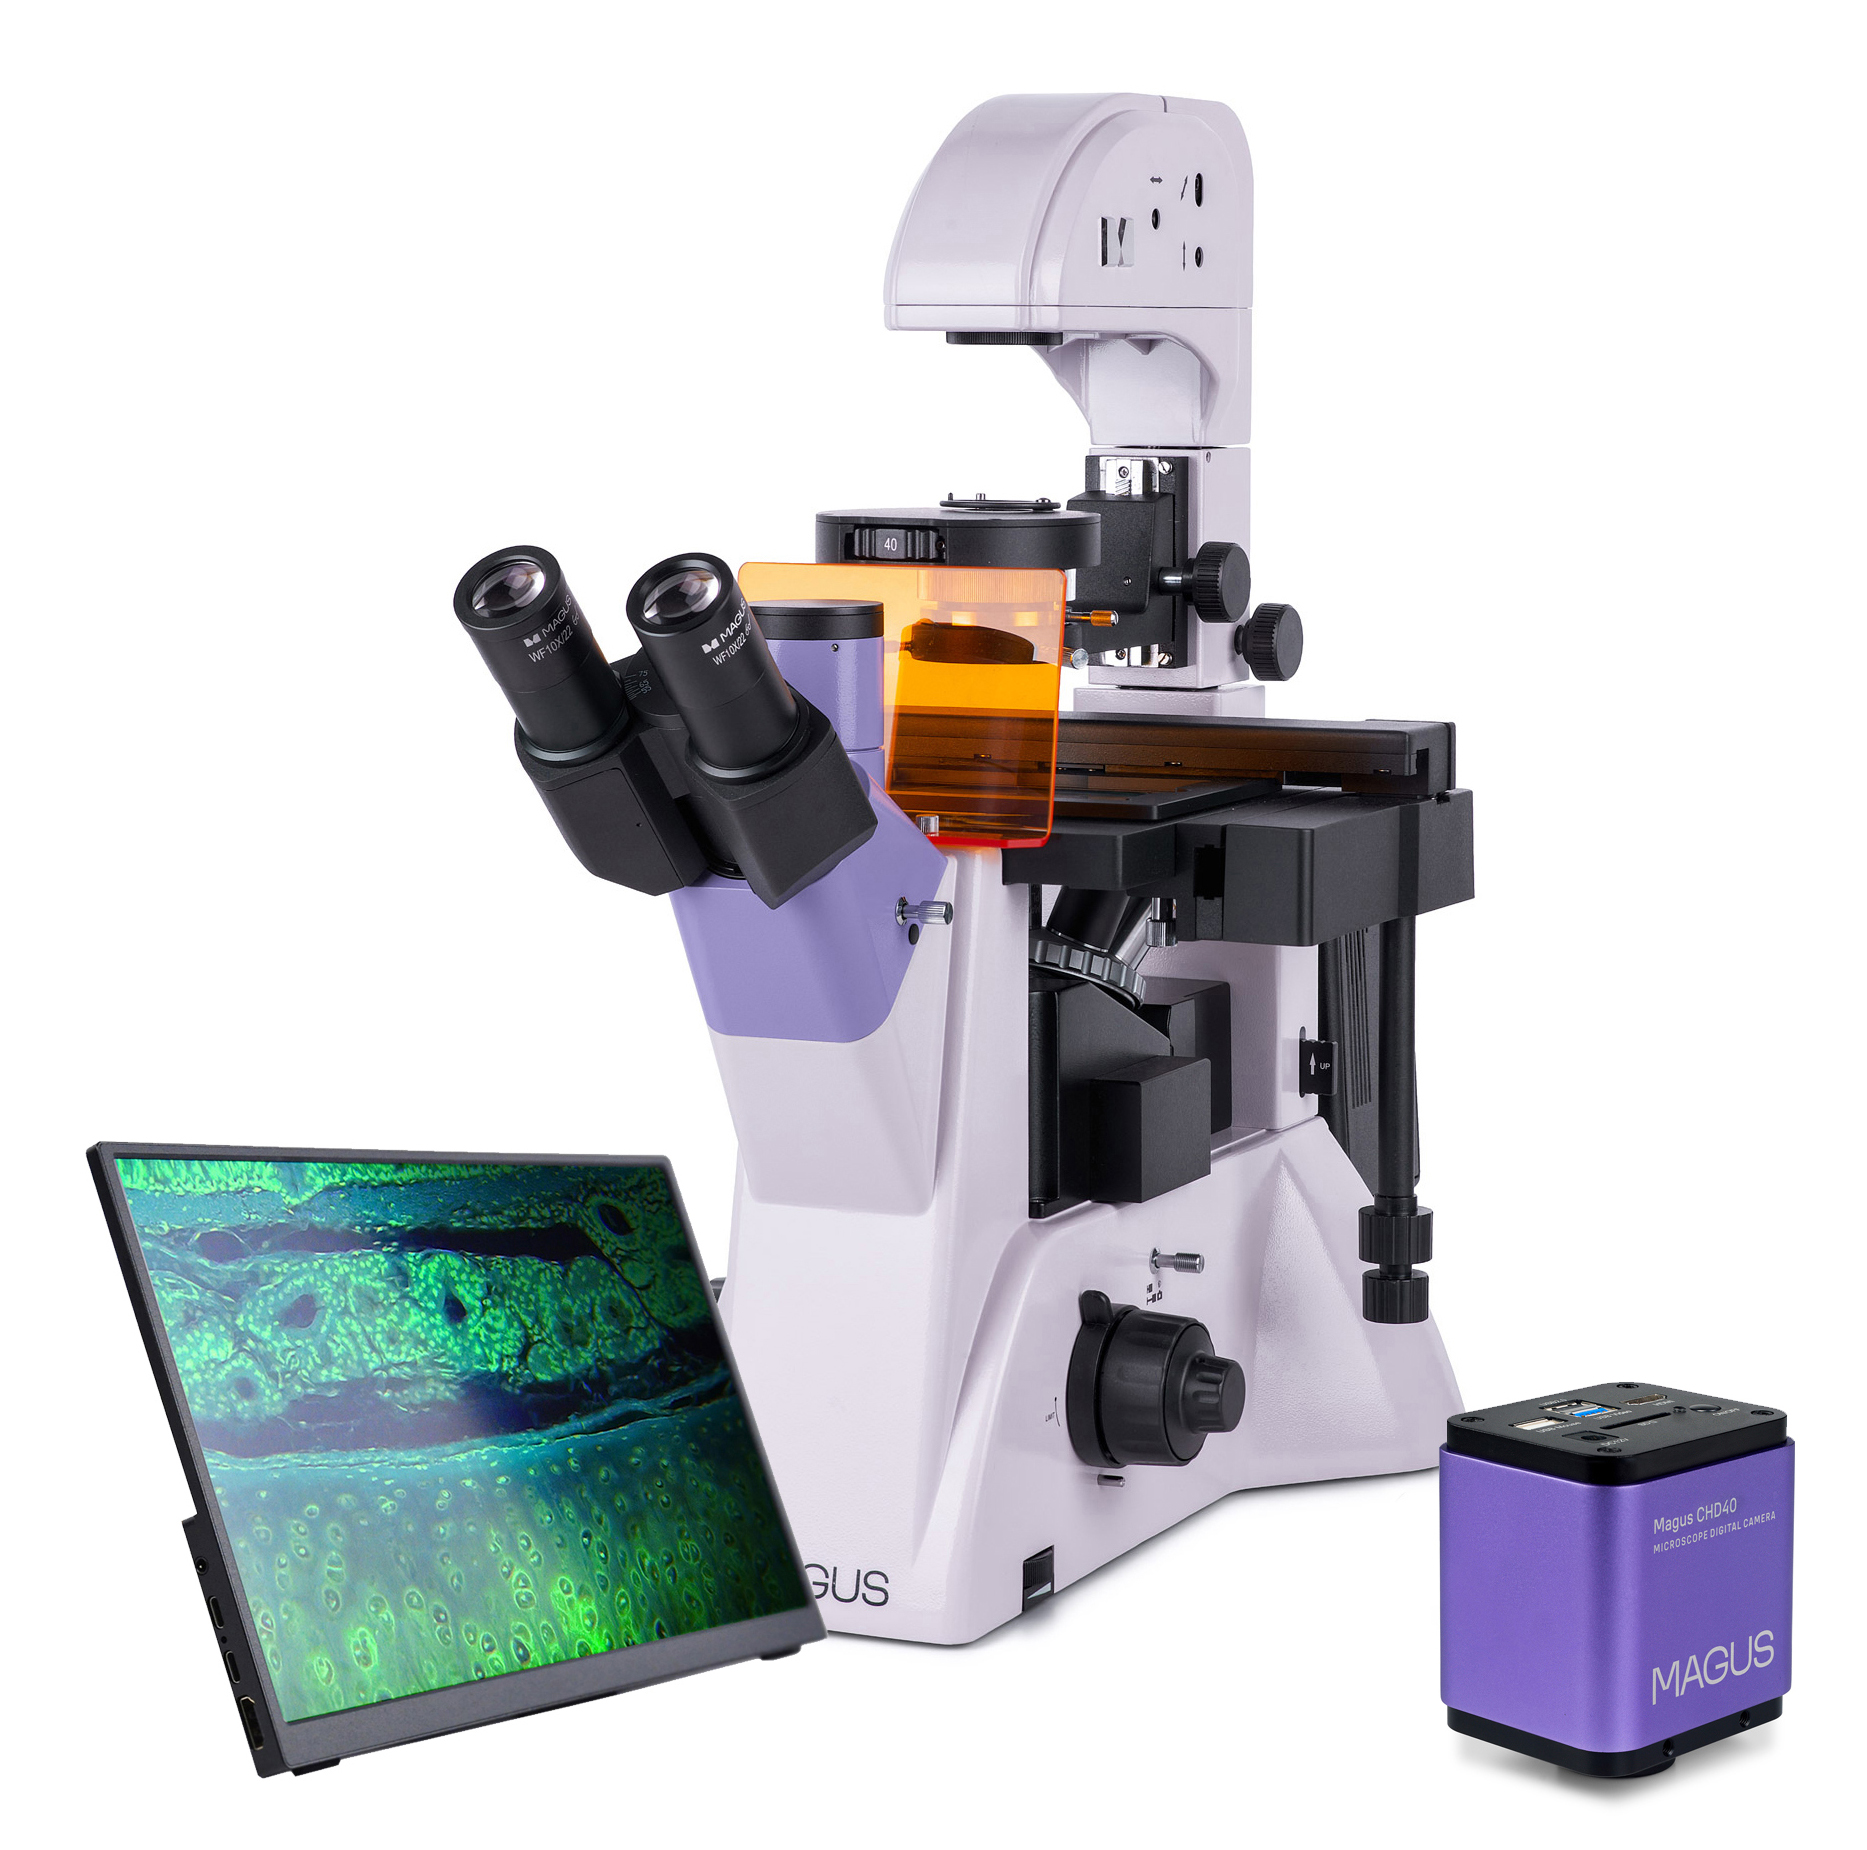 MAGUS Lum VD500 LCD fluoreszcens fordított digitális mikroszkóp